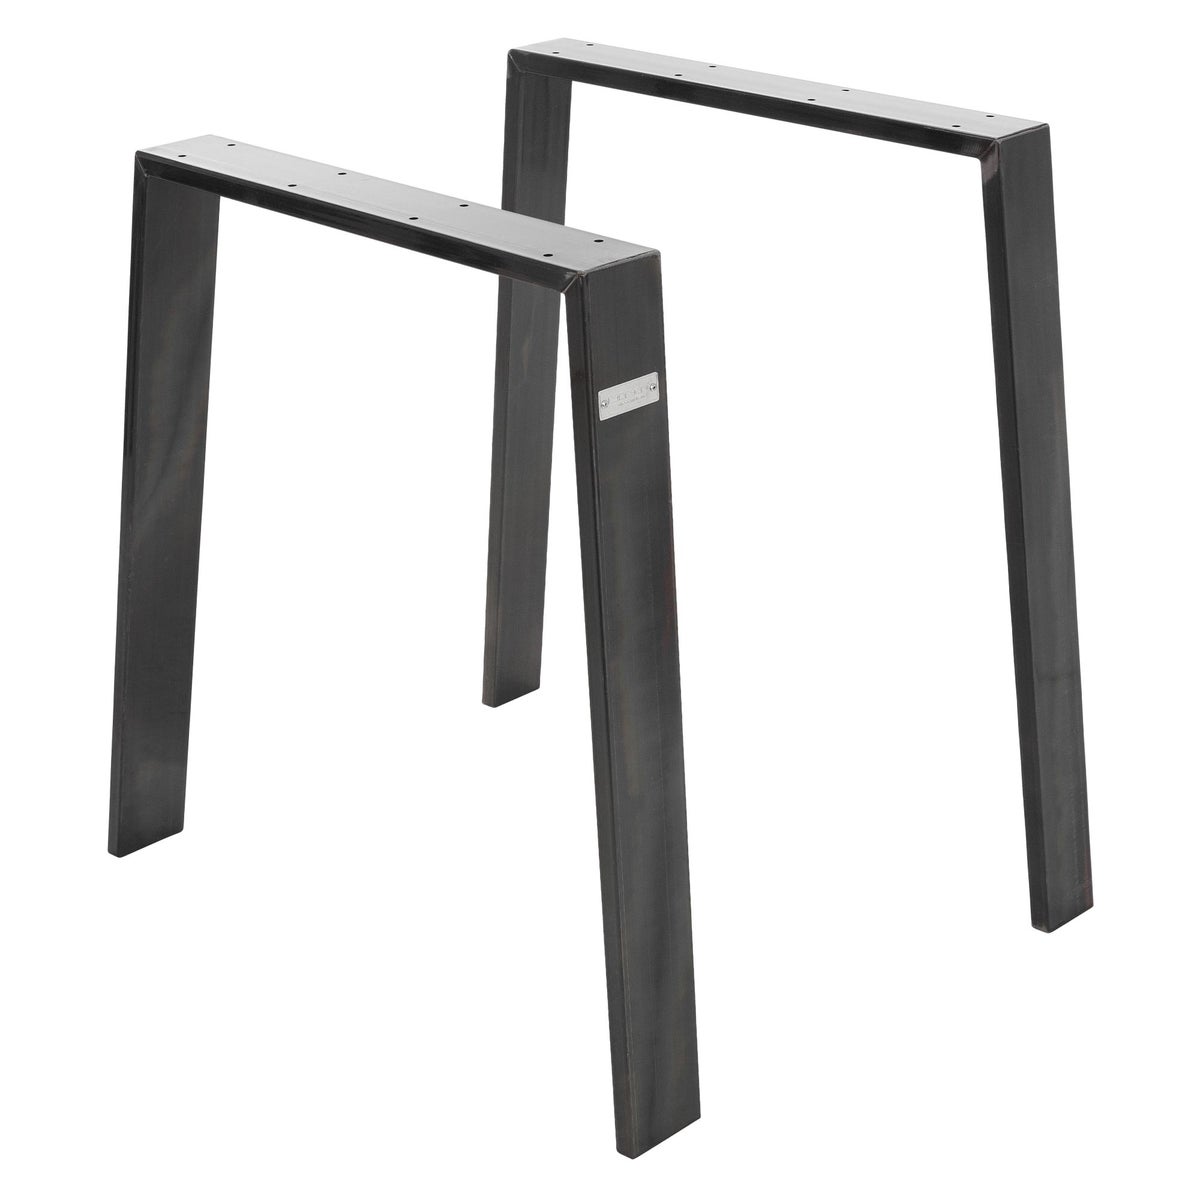 ML-Design 2er Set Tischbeine Loft 75x72 cm, Industrial, Profil 8x2cm, aus Stahl, Industriedesign, U-Form, Metall Tischgestell scandic, Tischkufen Tischuntergestell Möbelfüße, für Esstisch/Schreibtisch